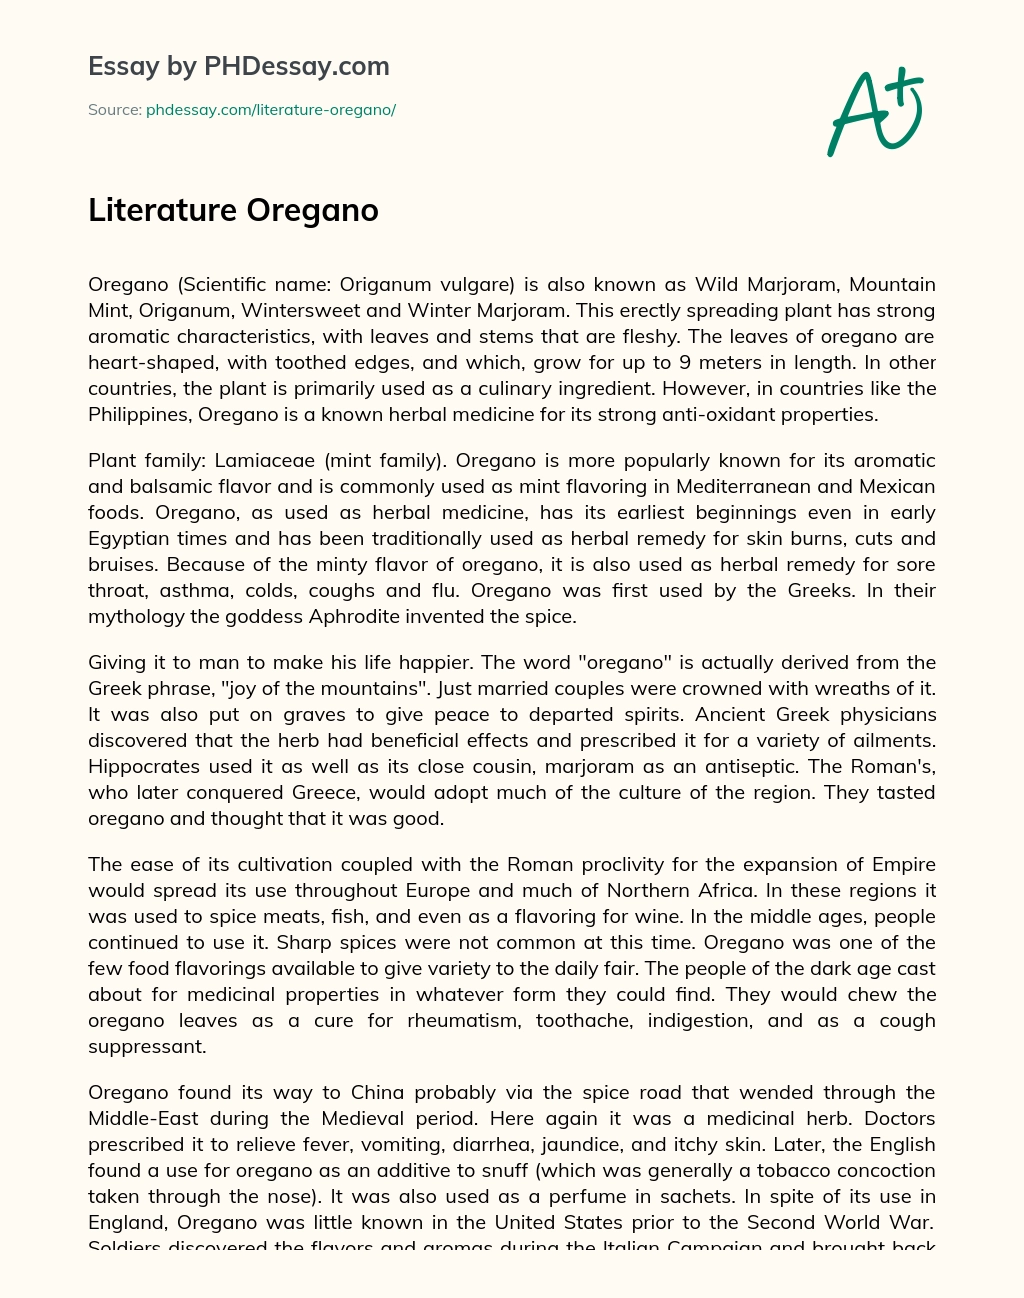 Literature Oregano essay